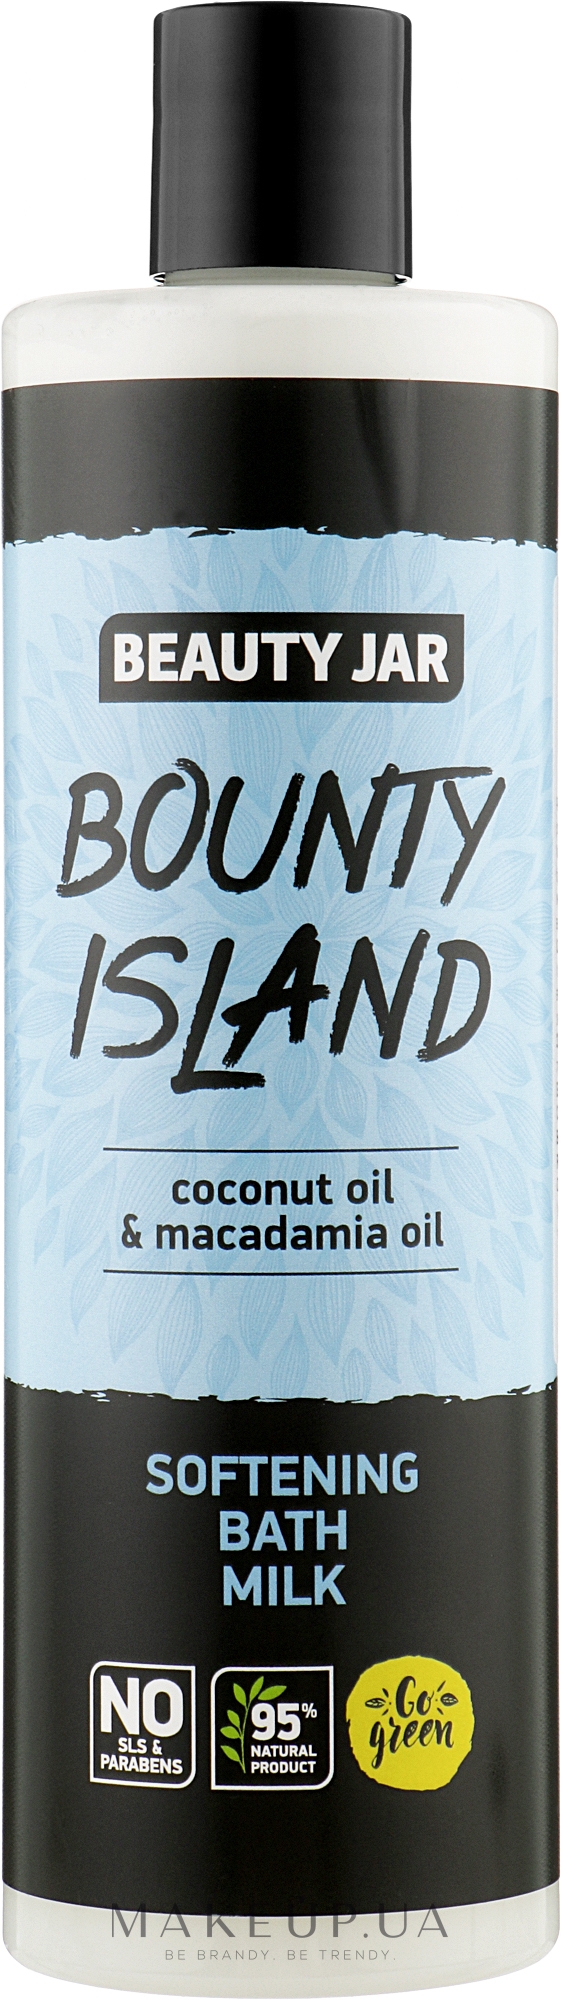 Смягчающая молочная пена для ванны с маслом кокоса и маслом макадамии - Beauty Jar Bounty Island Softening Bath Milk — фото 400ml